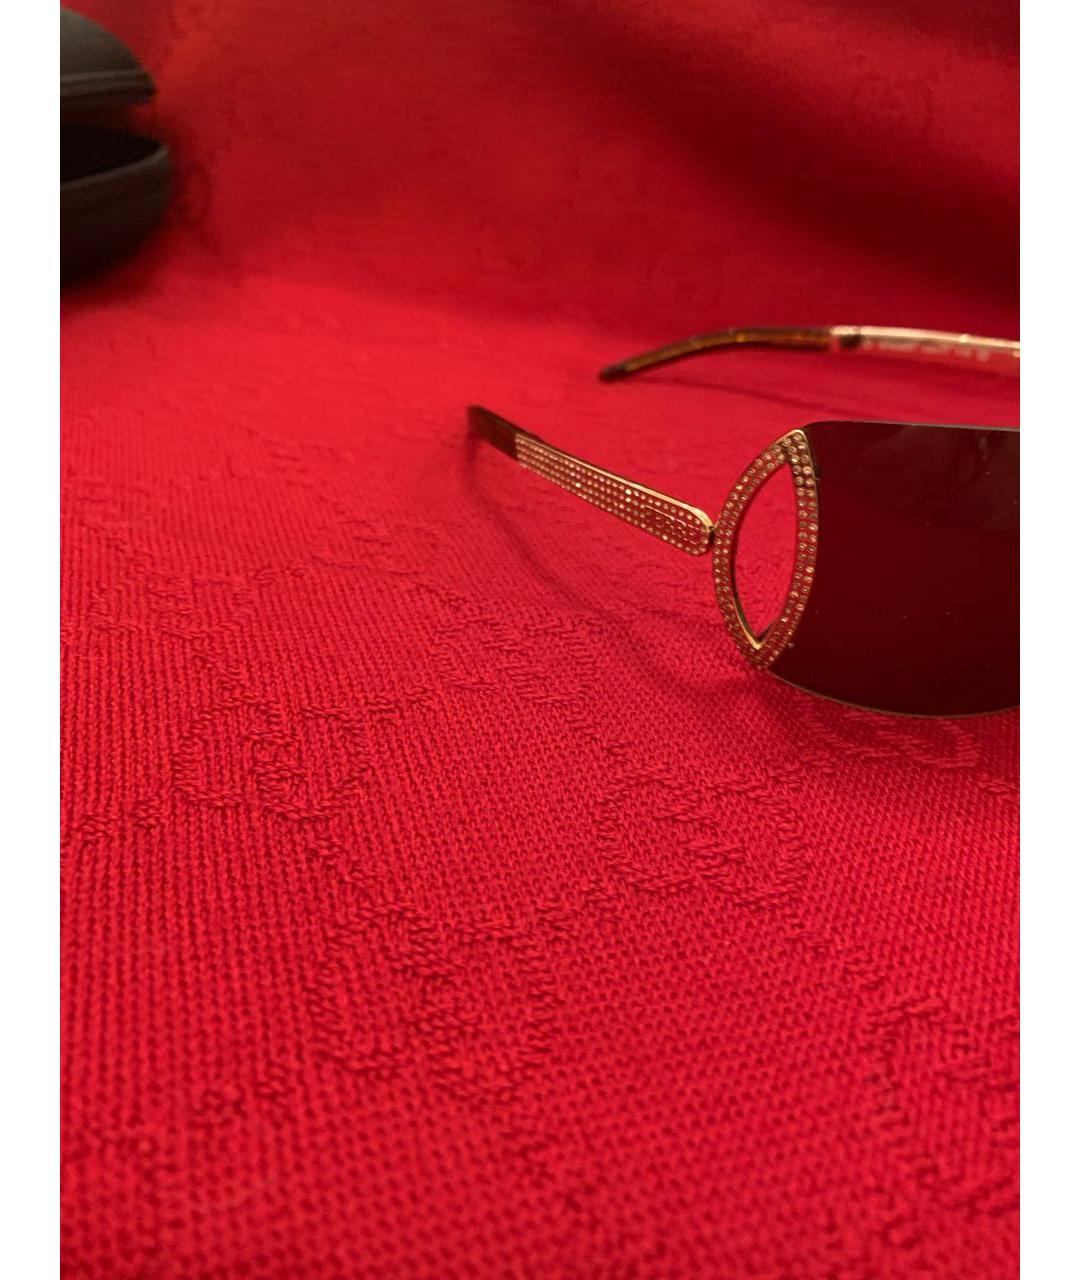 GIANFRANCO FERRE VINTAGE Коричневые металлические солнцезащитные очки, фото 6